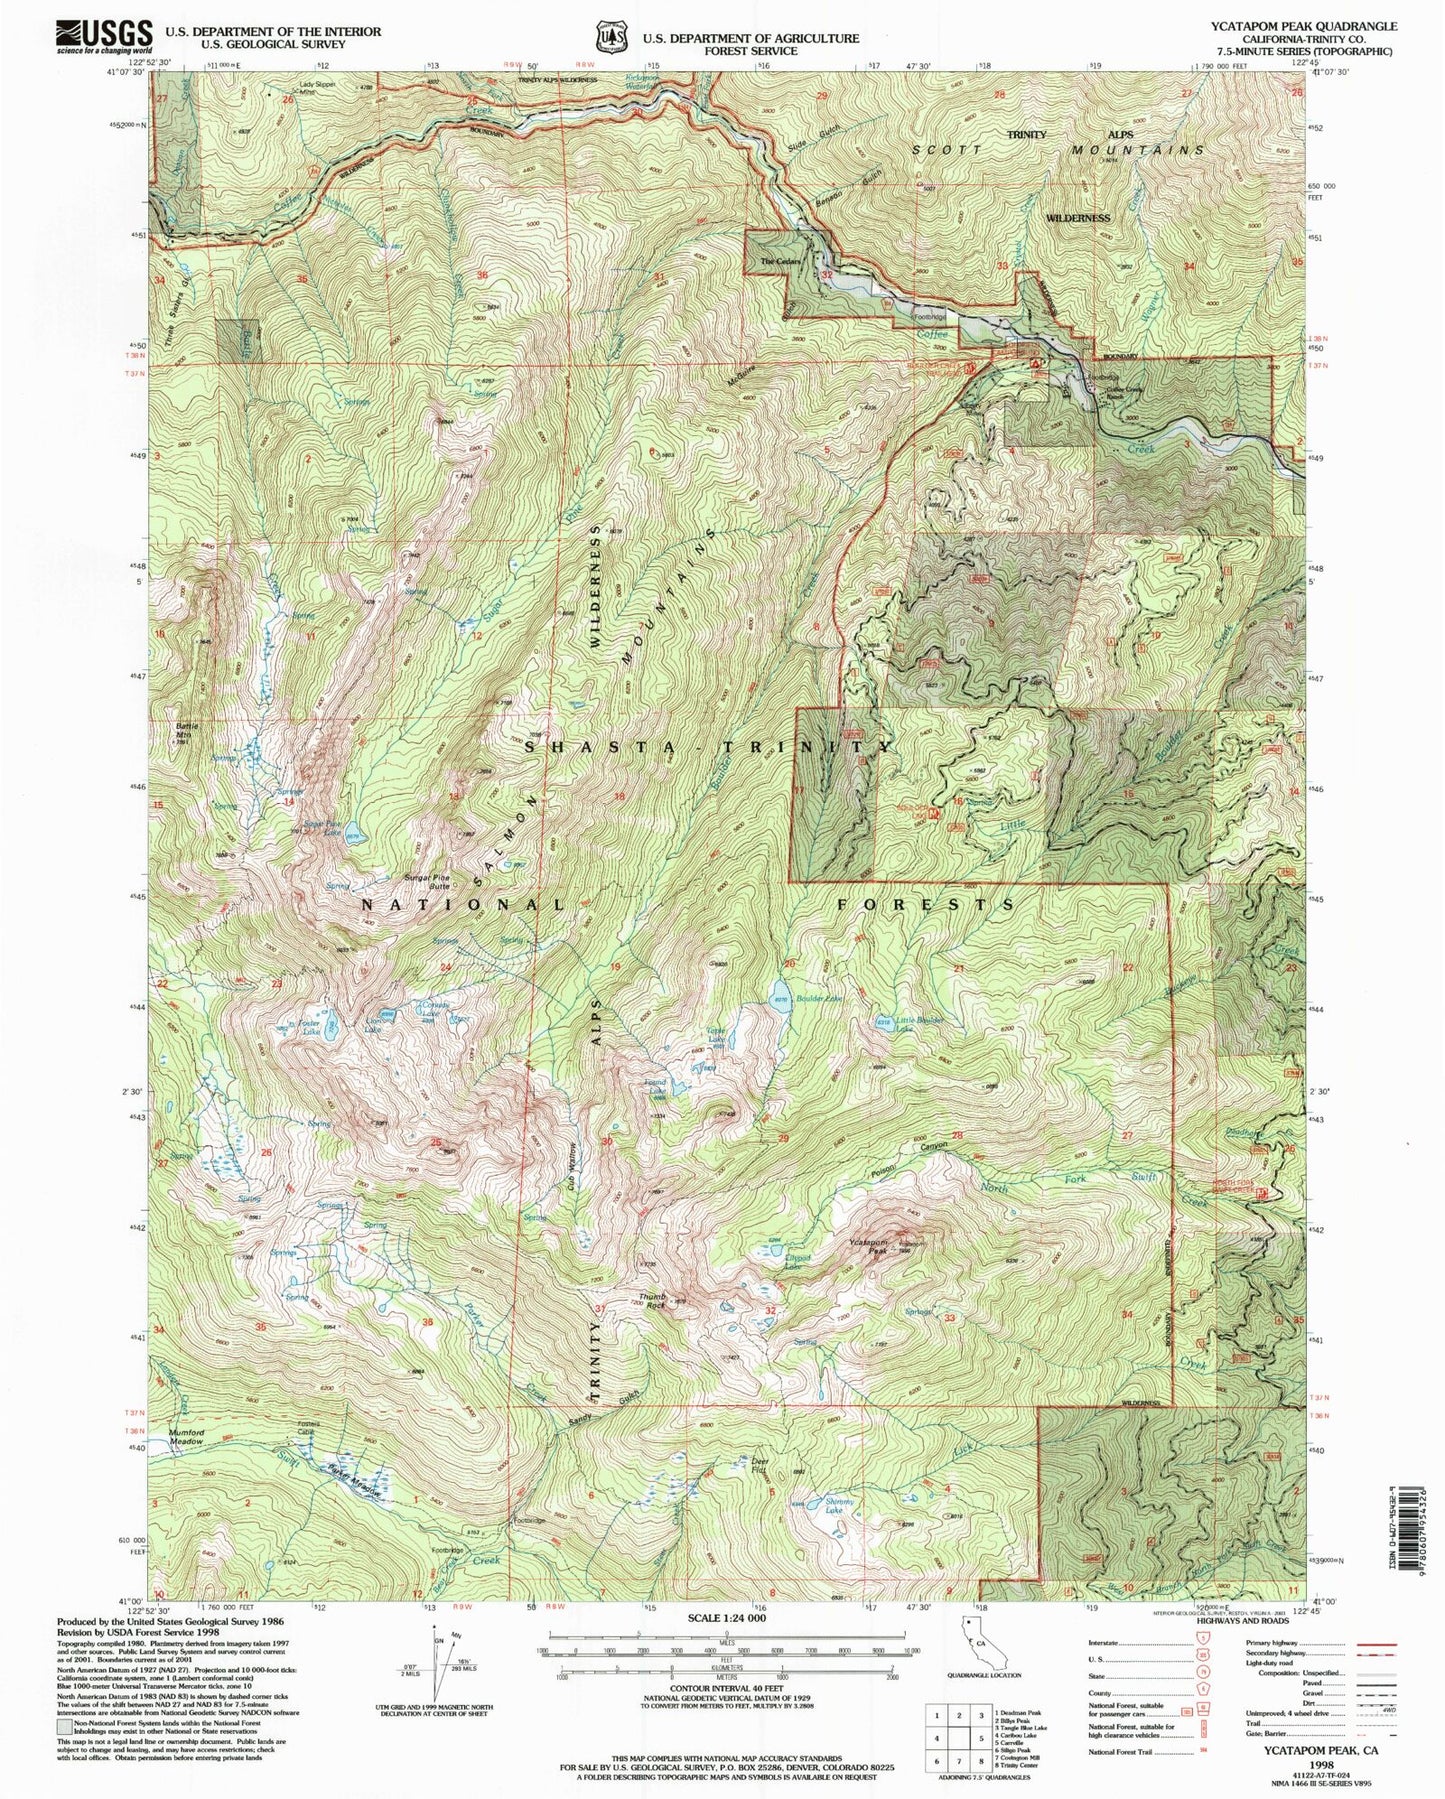 USGS Classic Ycatapom Peak California 7.5'x7.5' Topo Map Image